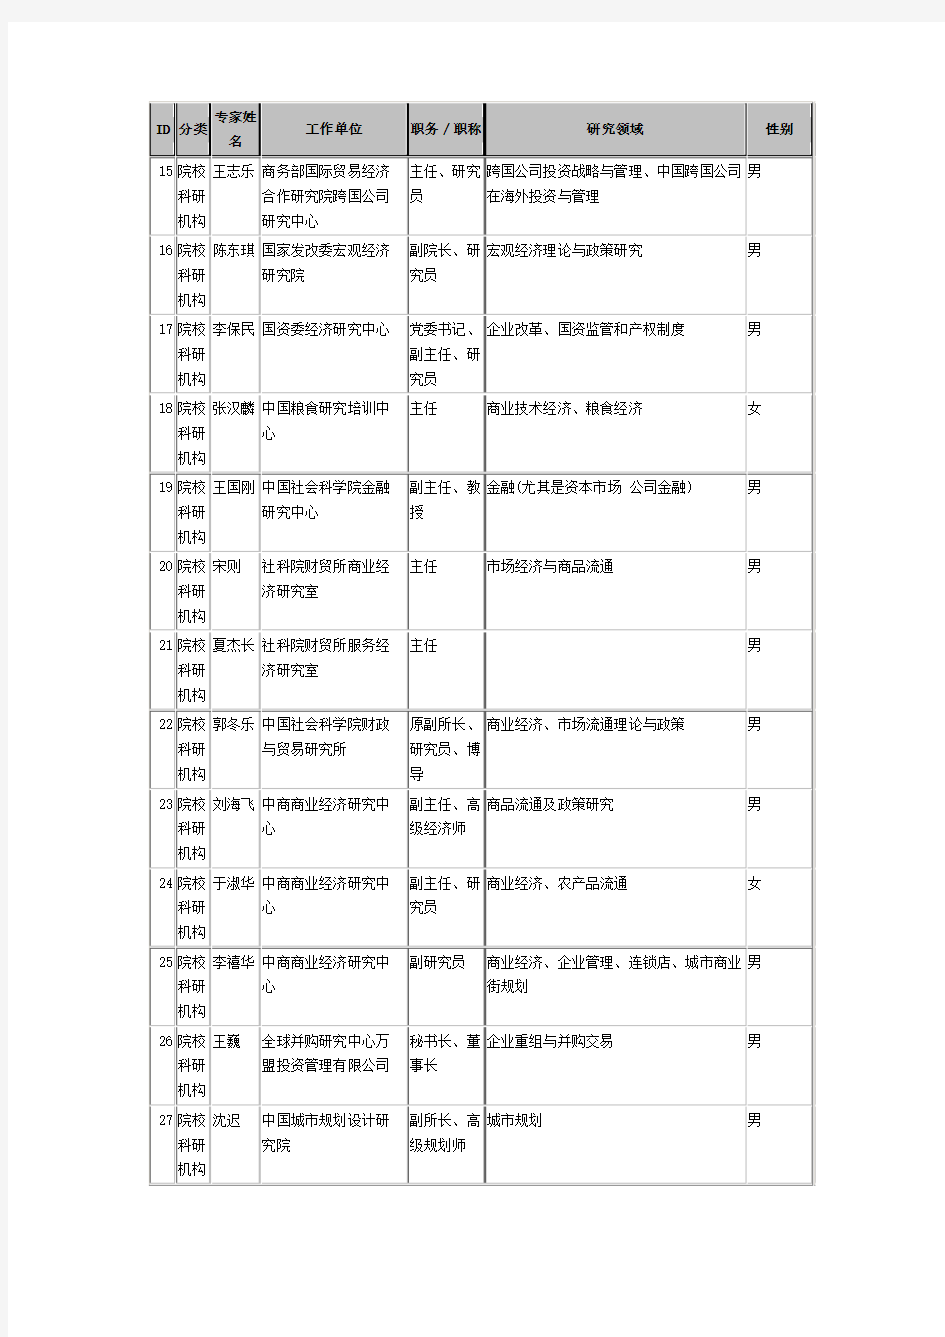 中国商业联合会专家委员会专家名单